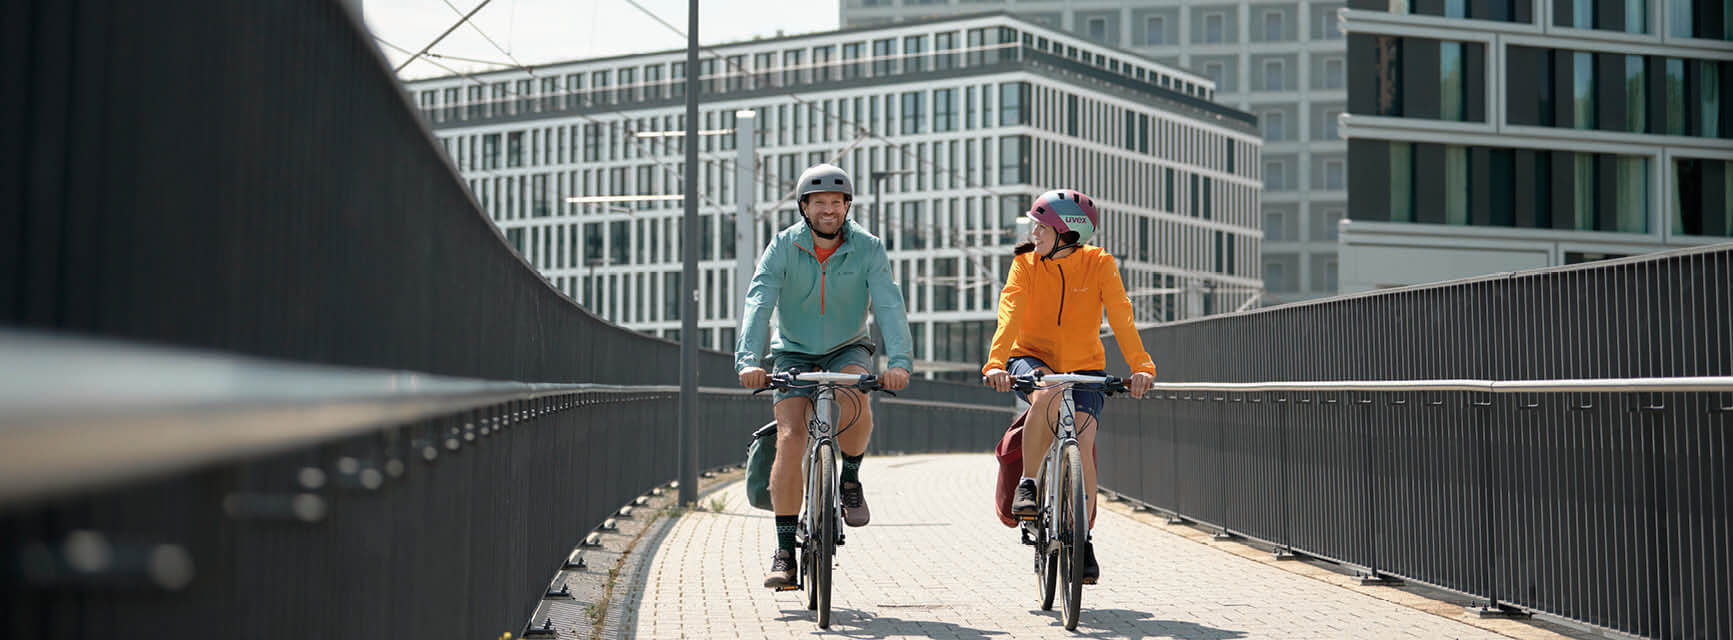 Ein Mann und frau sind bei Sonnenschein mit dem Fahrrad unterwegs. Beide lachen und tragen einen Helm.